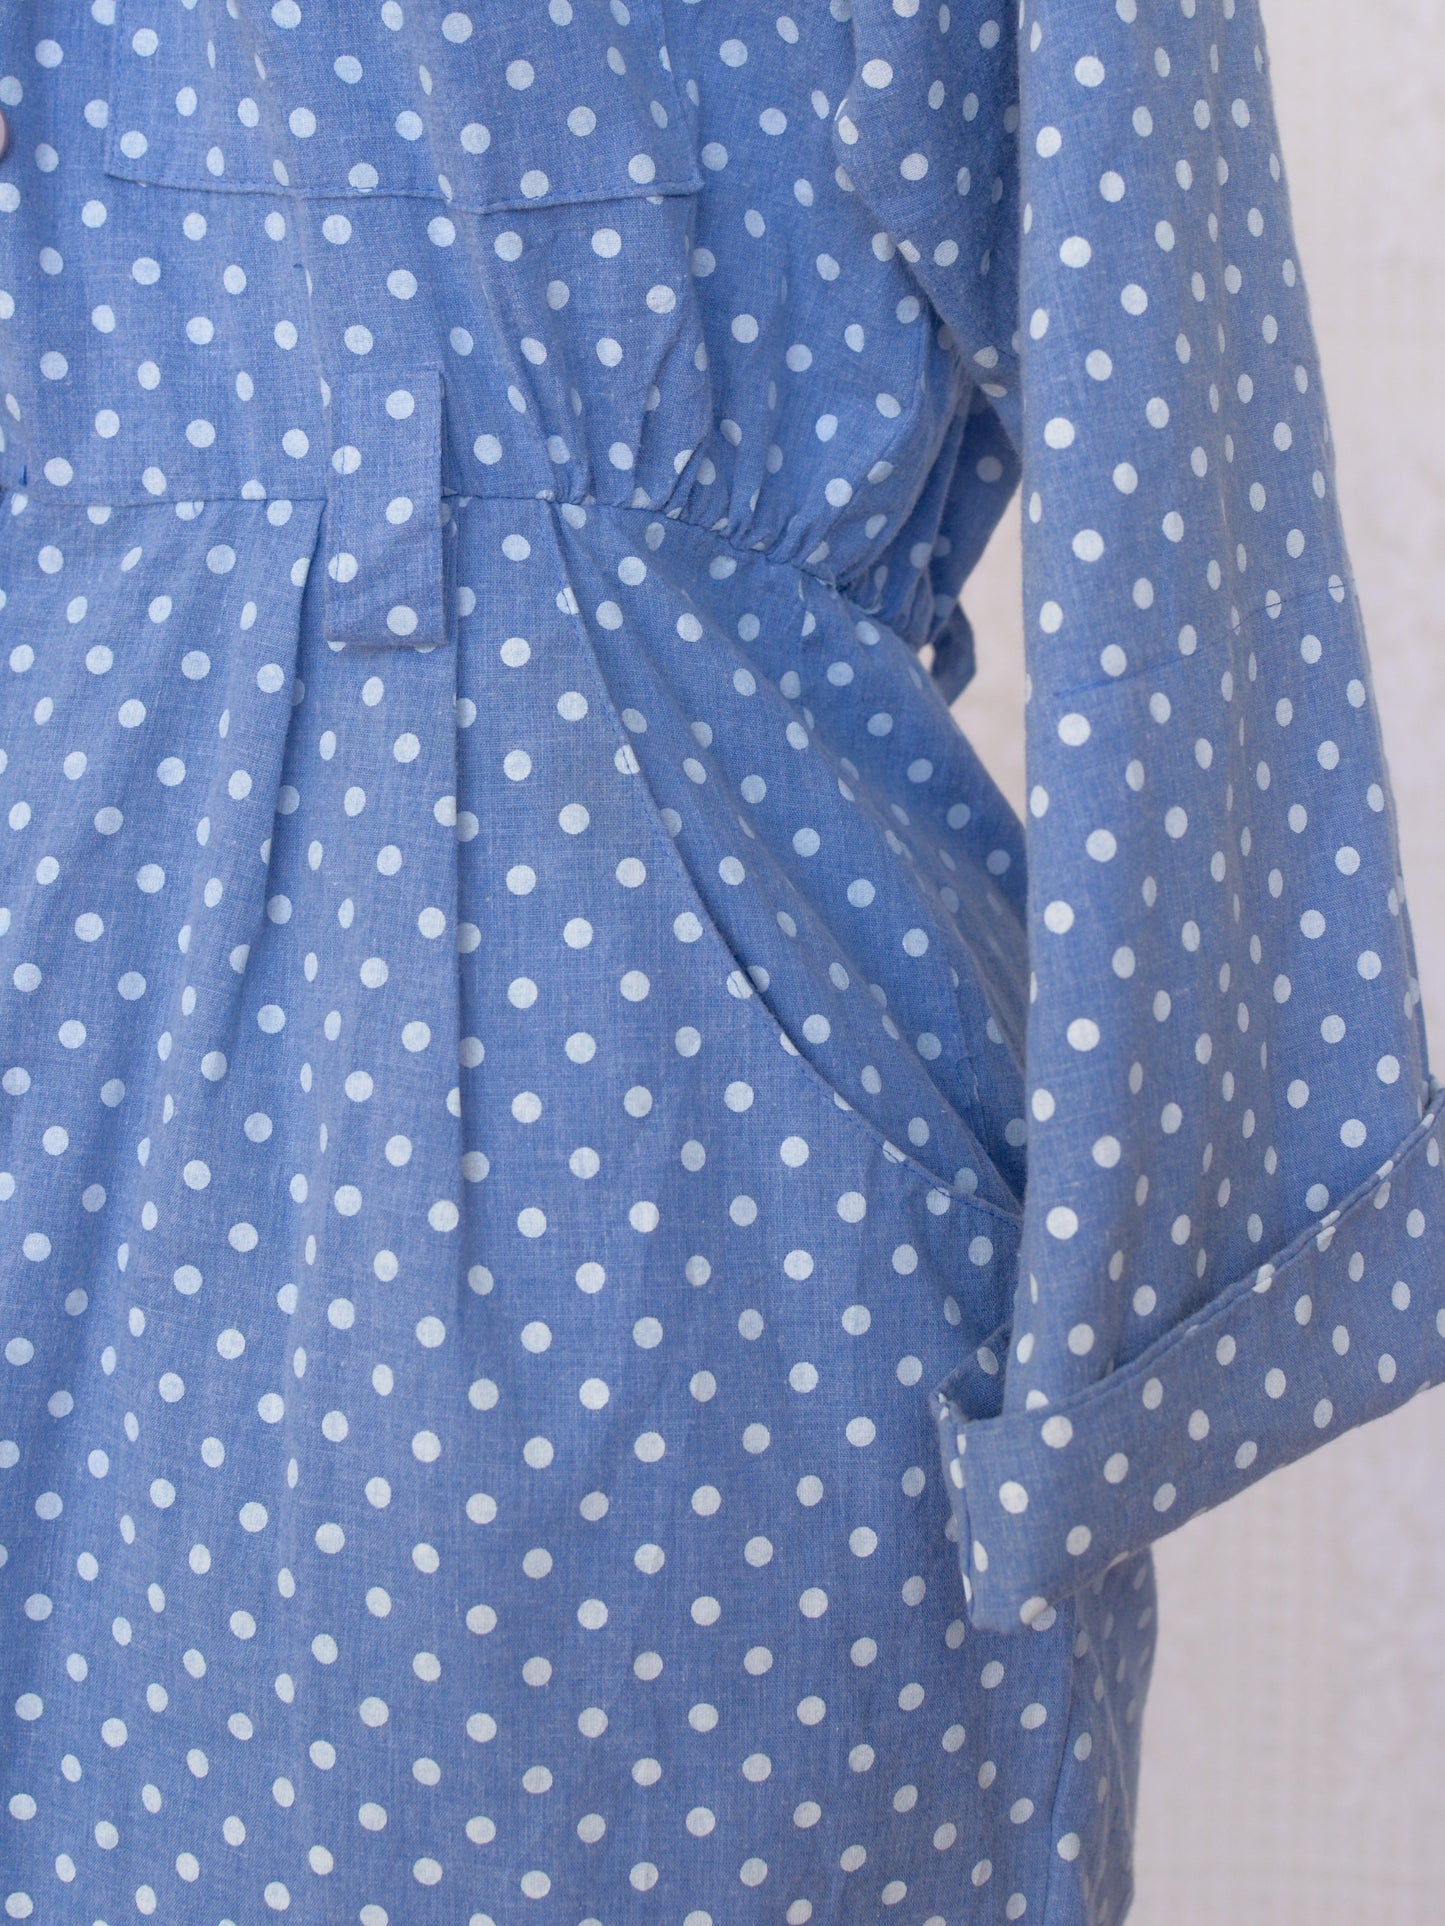 1980s style light blue chambray polkadot cotton fitted shirt dress